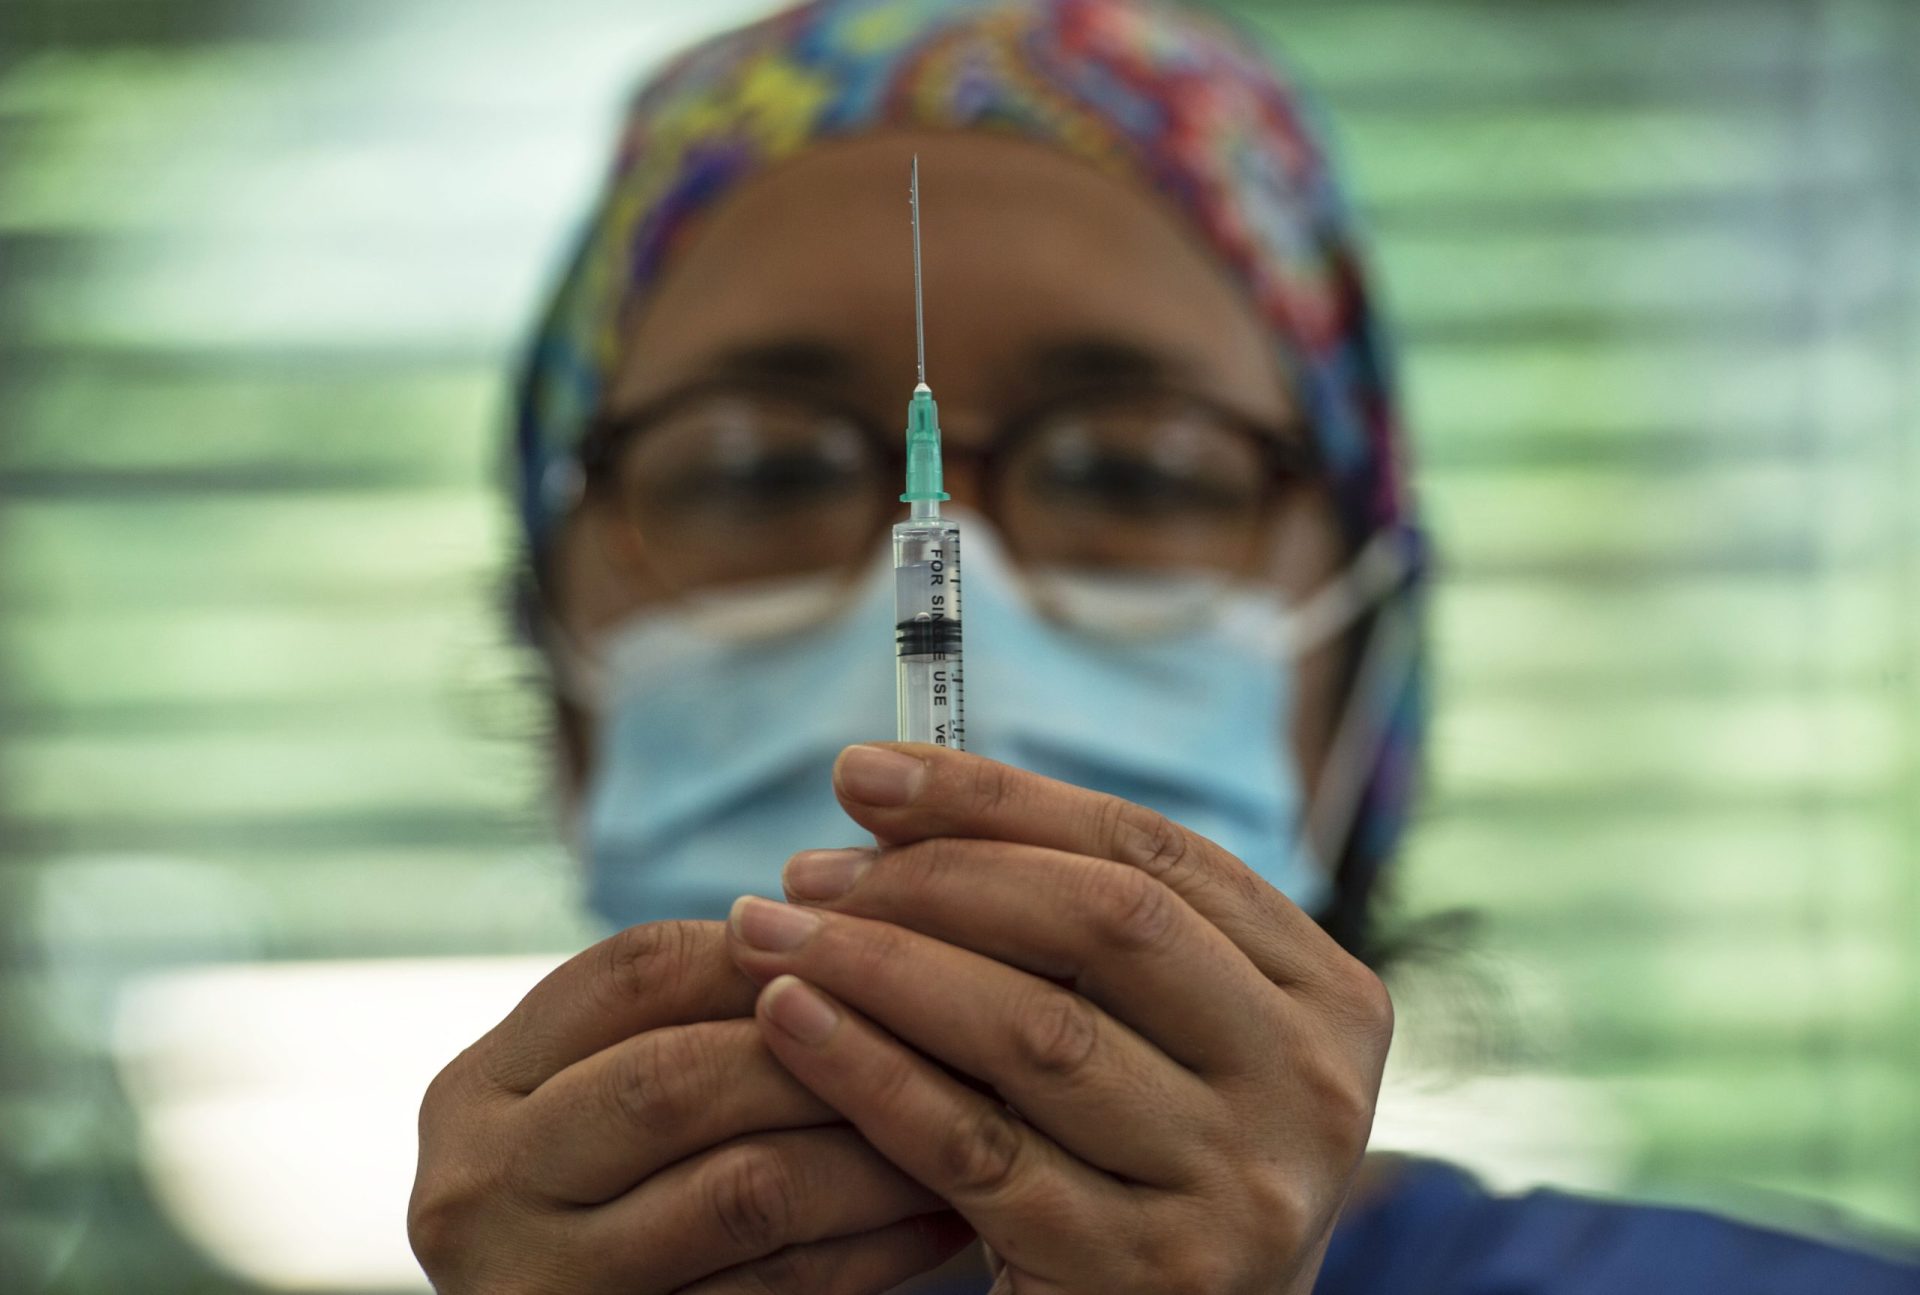 Gerente de lar paga 800 euros ao Estado por contribuir para vacinação irregular da sua mulher